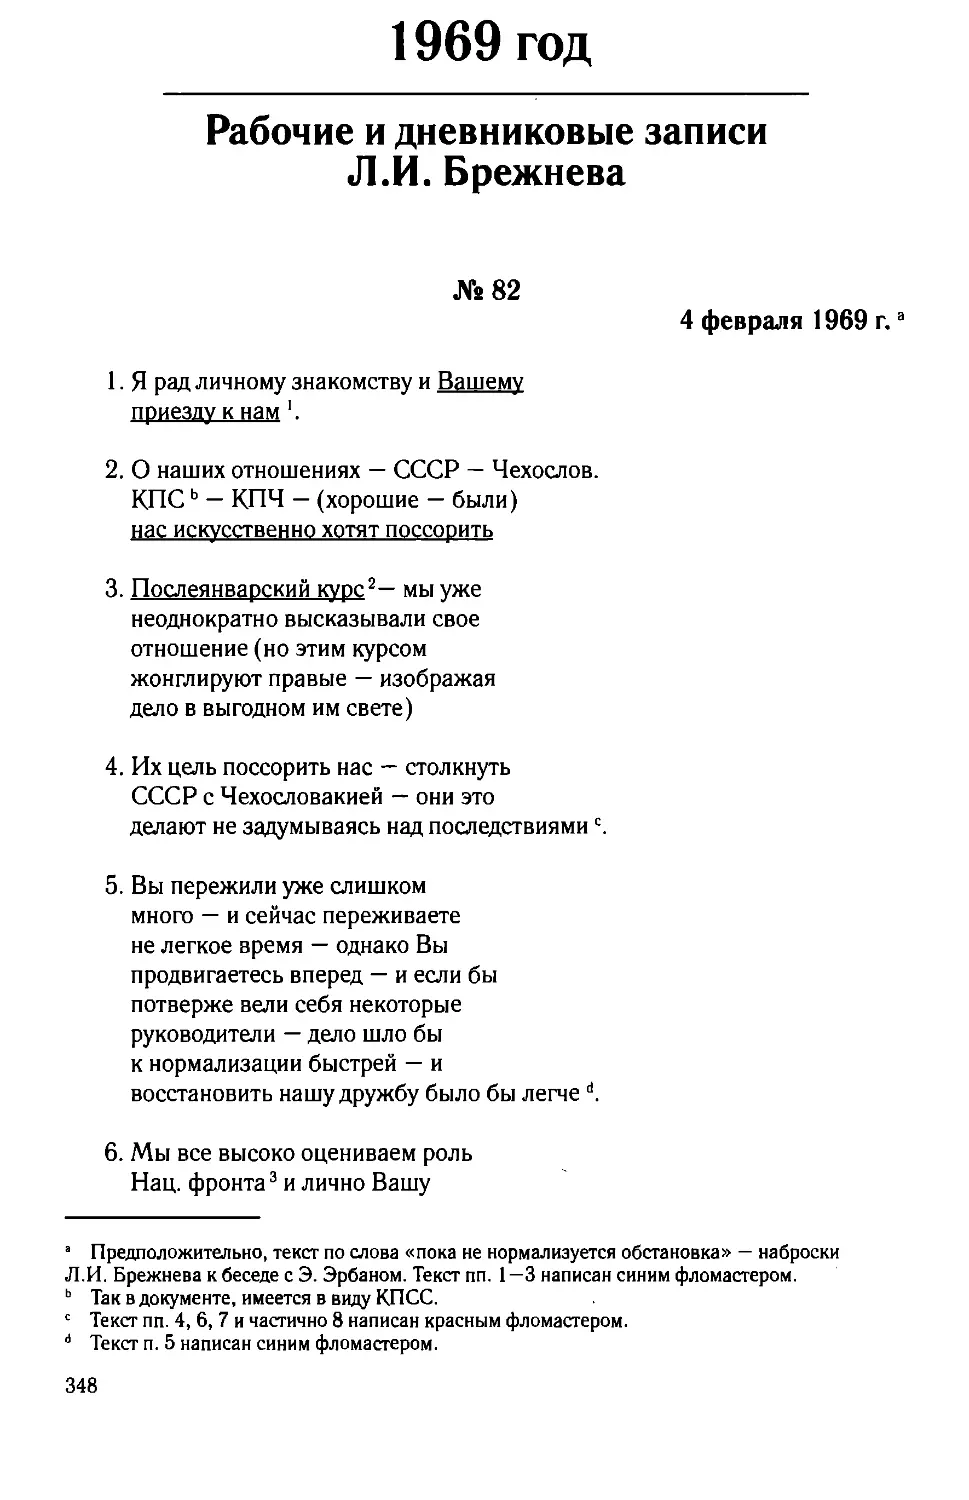 Рабочие и дневниковые записи Л.И. Брежнева. 1969 год